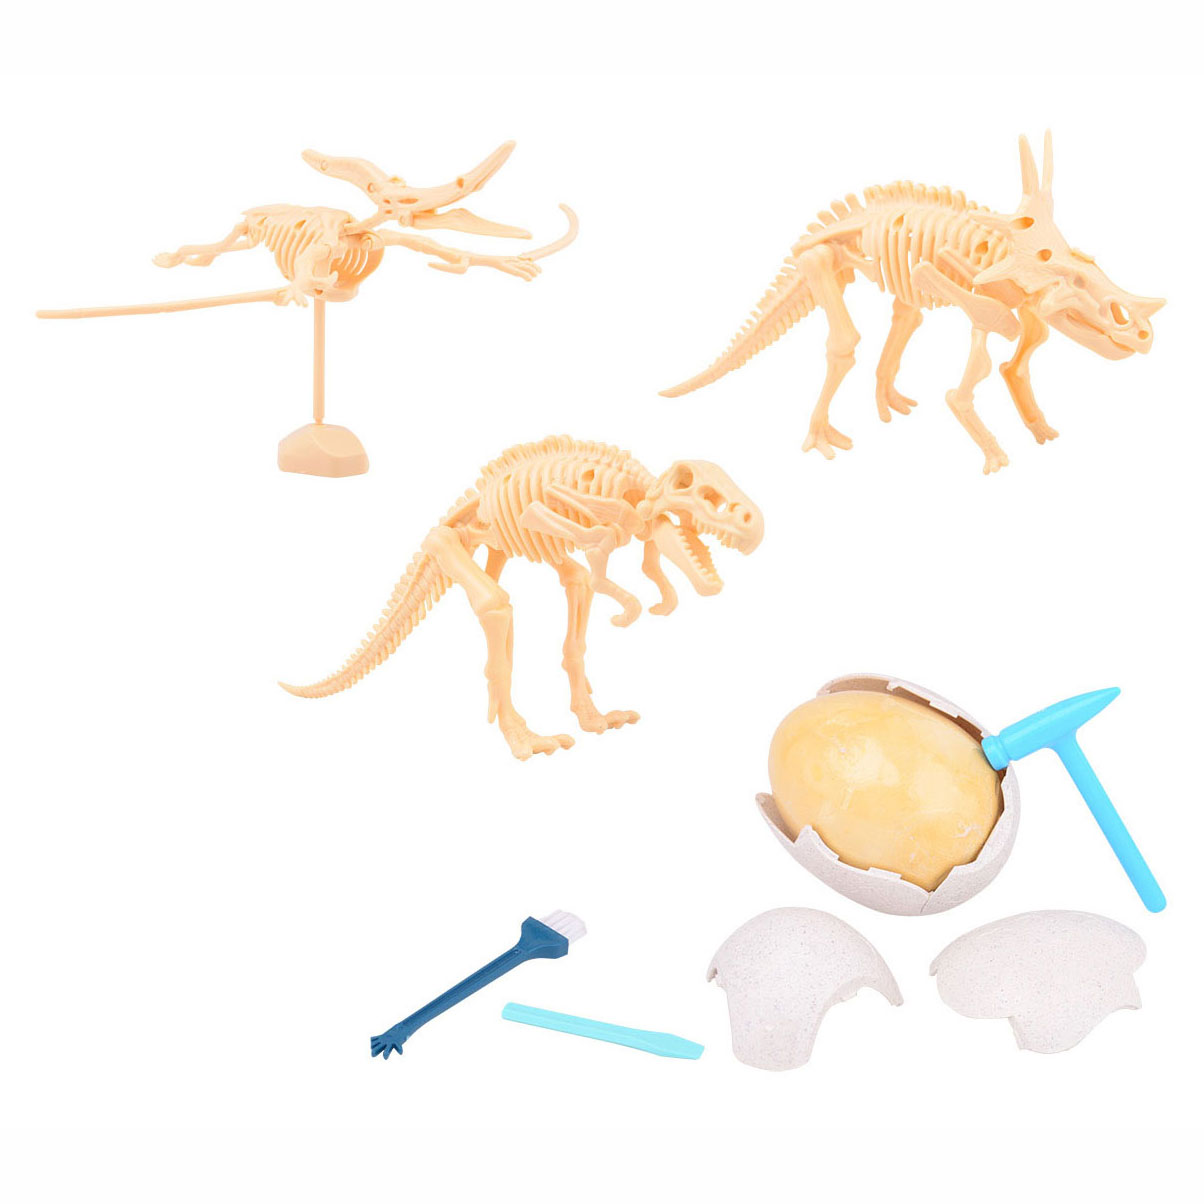 Zerbrich das Ei-Dino-Fossil